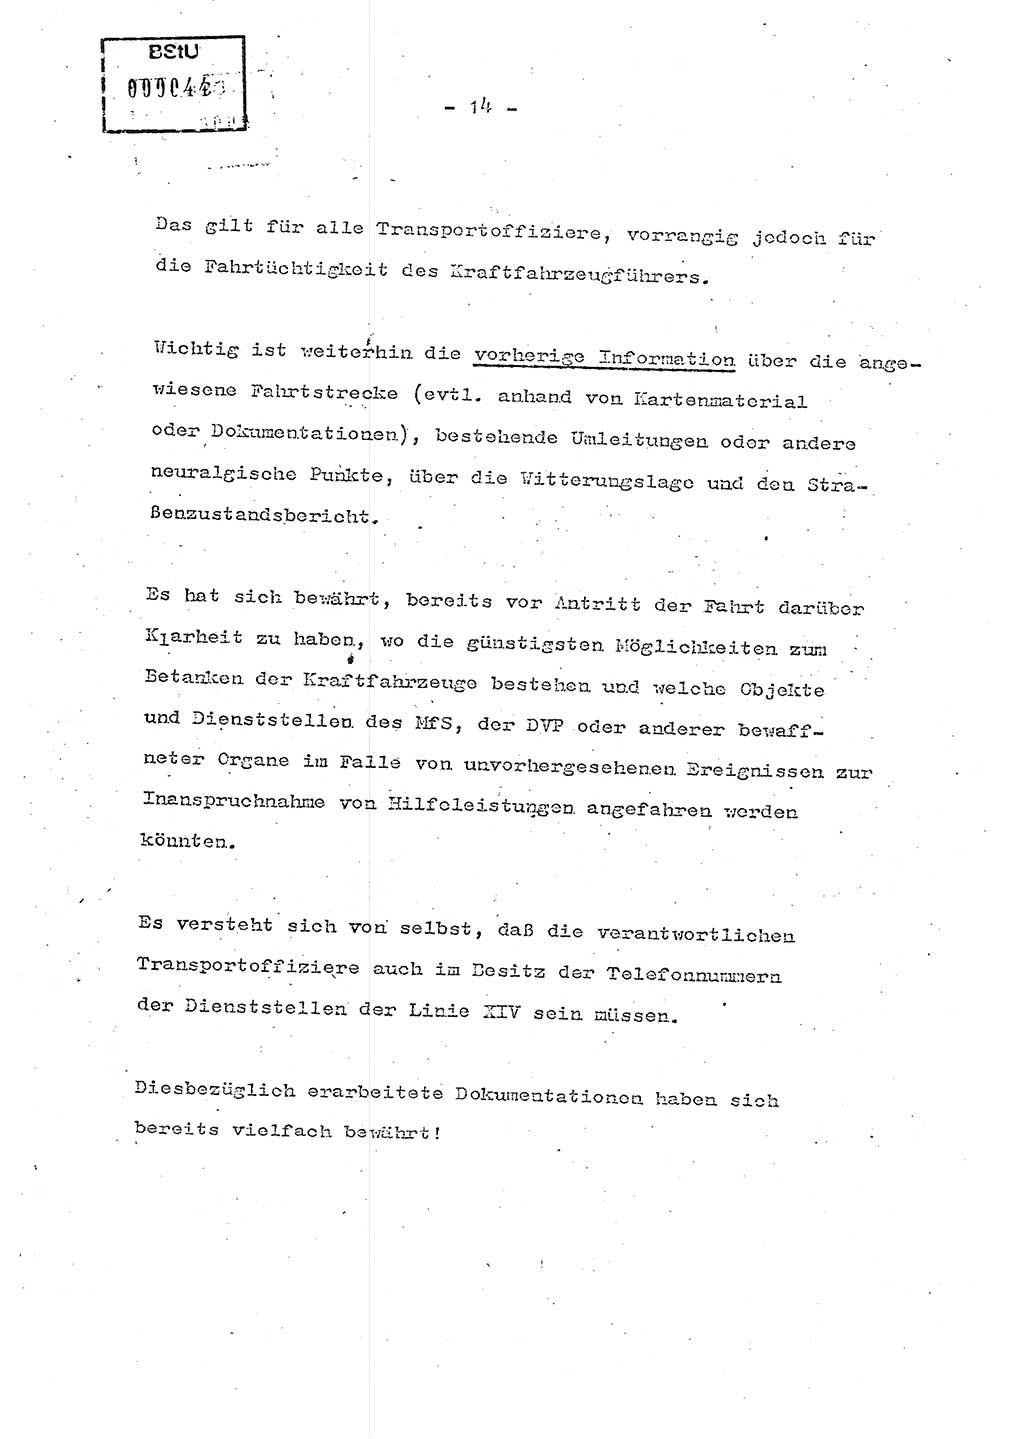 Schulungsmaterial Exemplar-Nr.: 7, Ministerium für Staatssicherheit [Deutsche Demokratische Republik (DDR)], Abteilung (Abt.) ⅩⅣ, Berlin 1986, Seite 14 (Sch.-Mat. Expl. 7 MfS DDR Abt. ⅩⅣ /86 1986, S. 14)